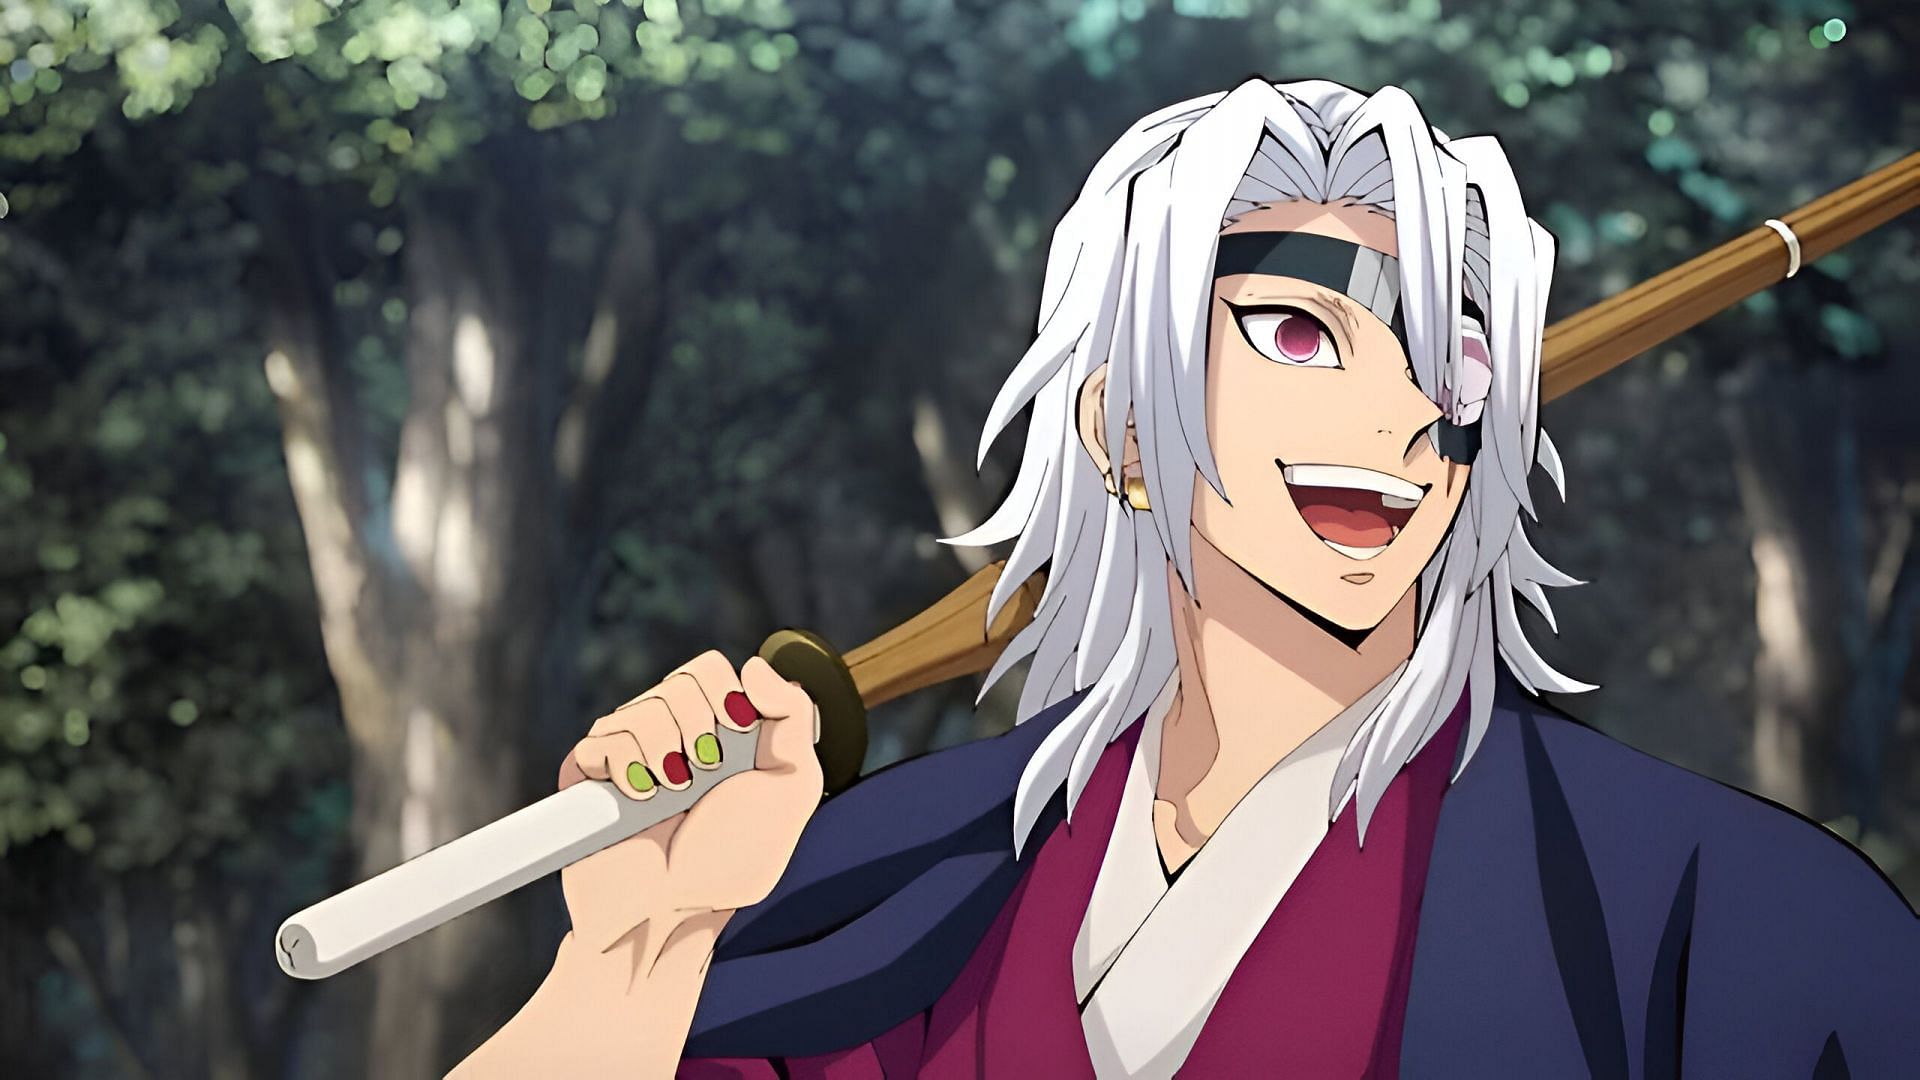 Tengen Uzui as seen in the anime (Image via Ufotable)